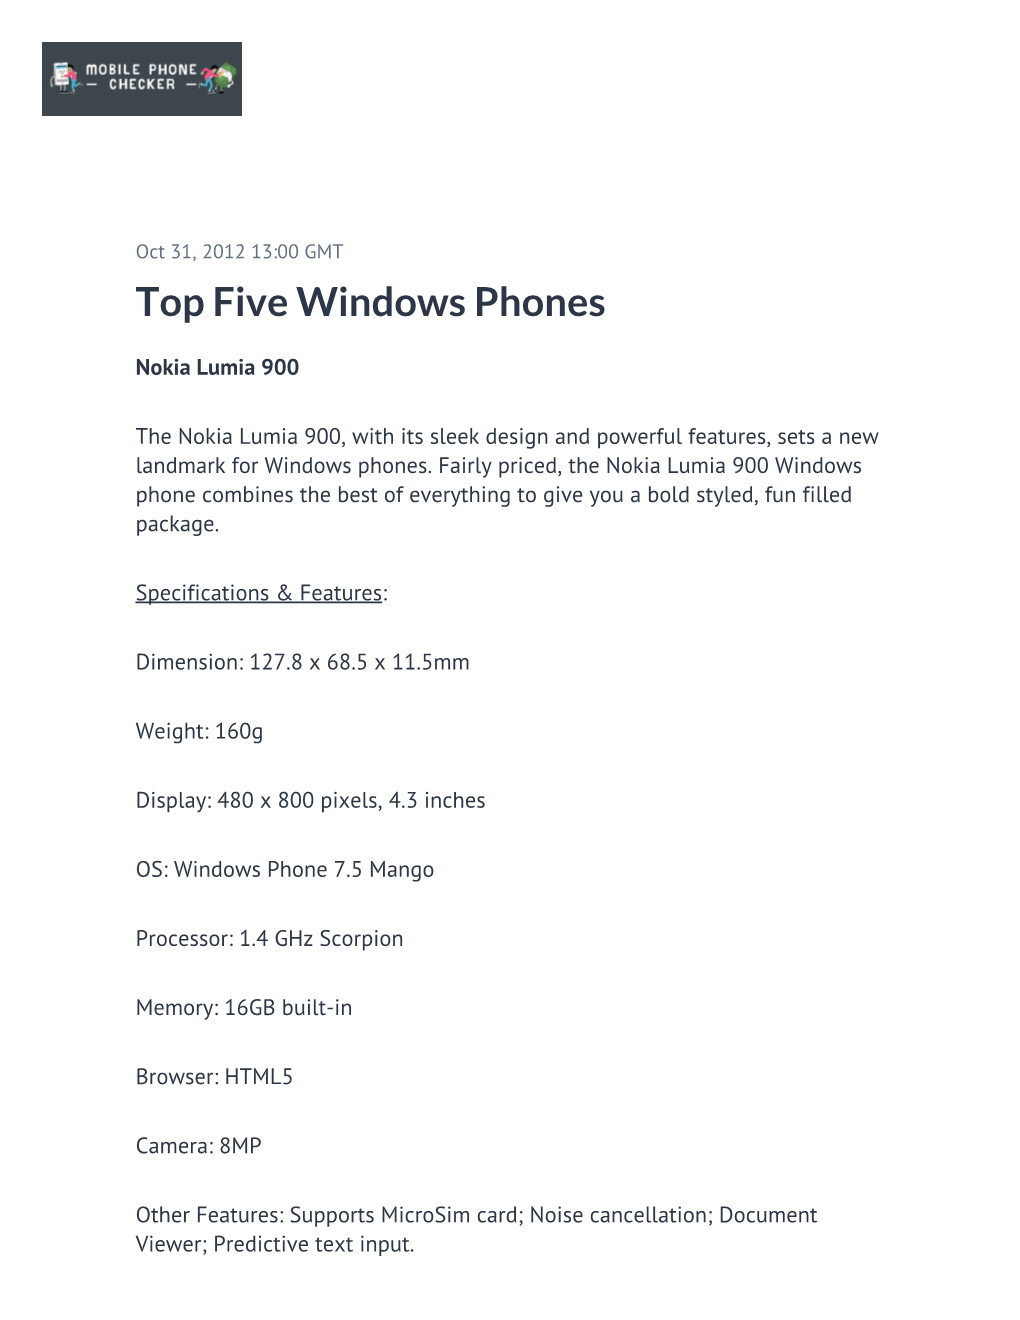 Top Five Windows Phones